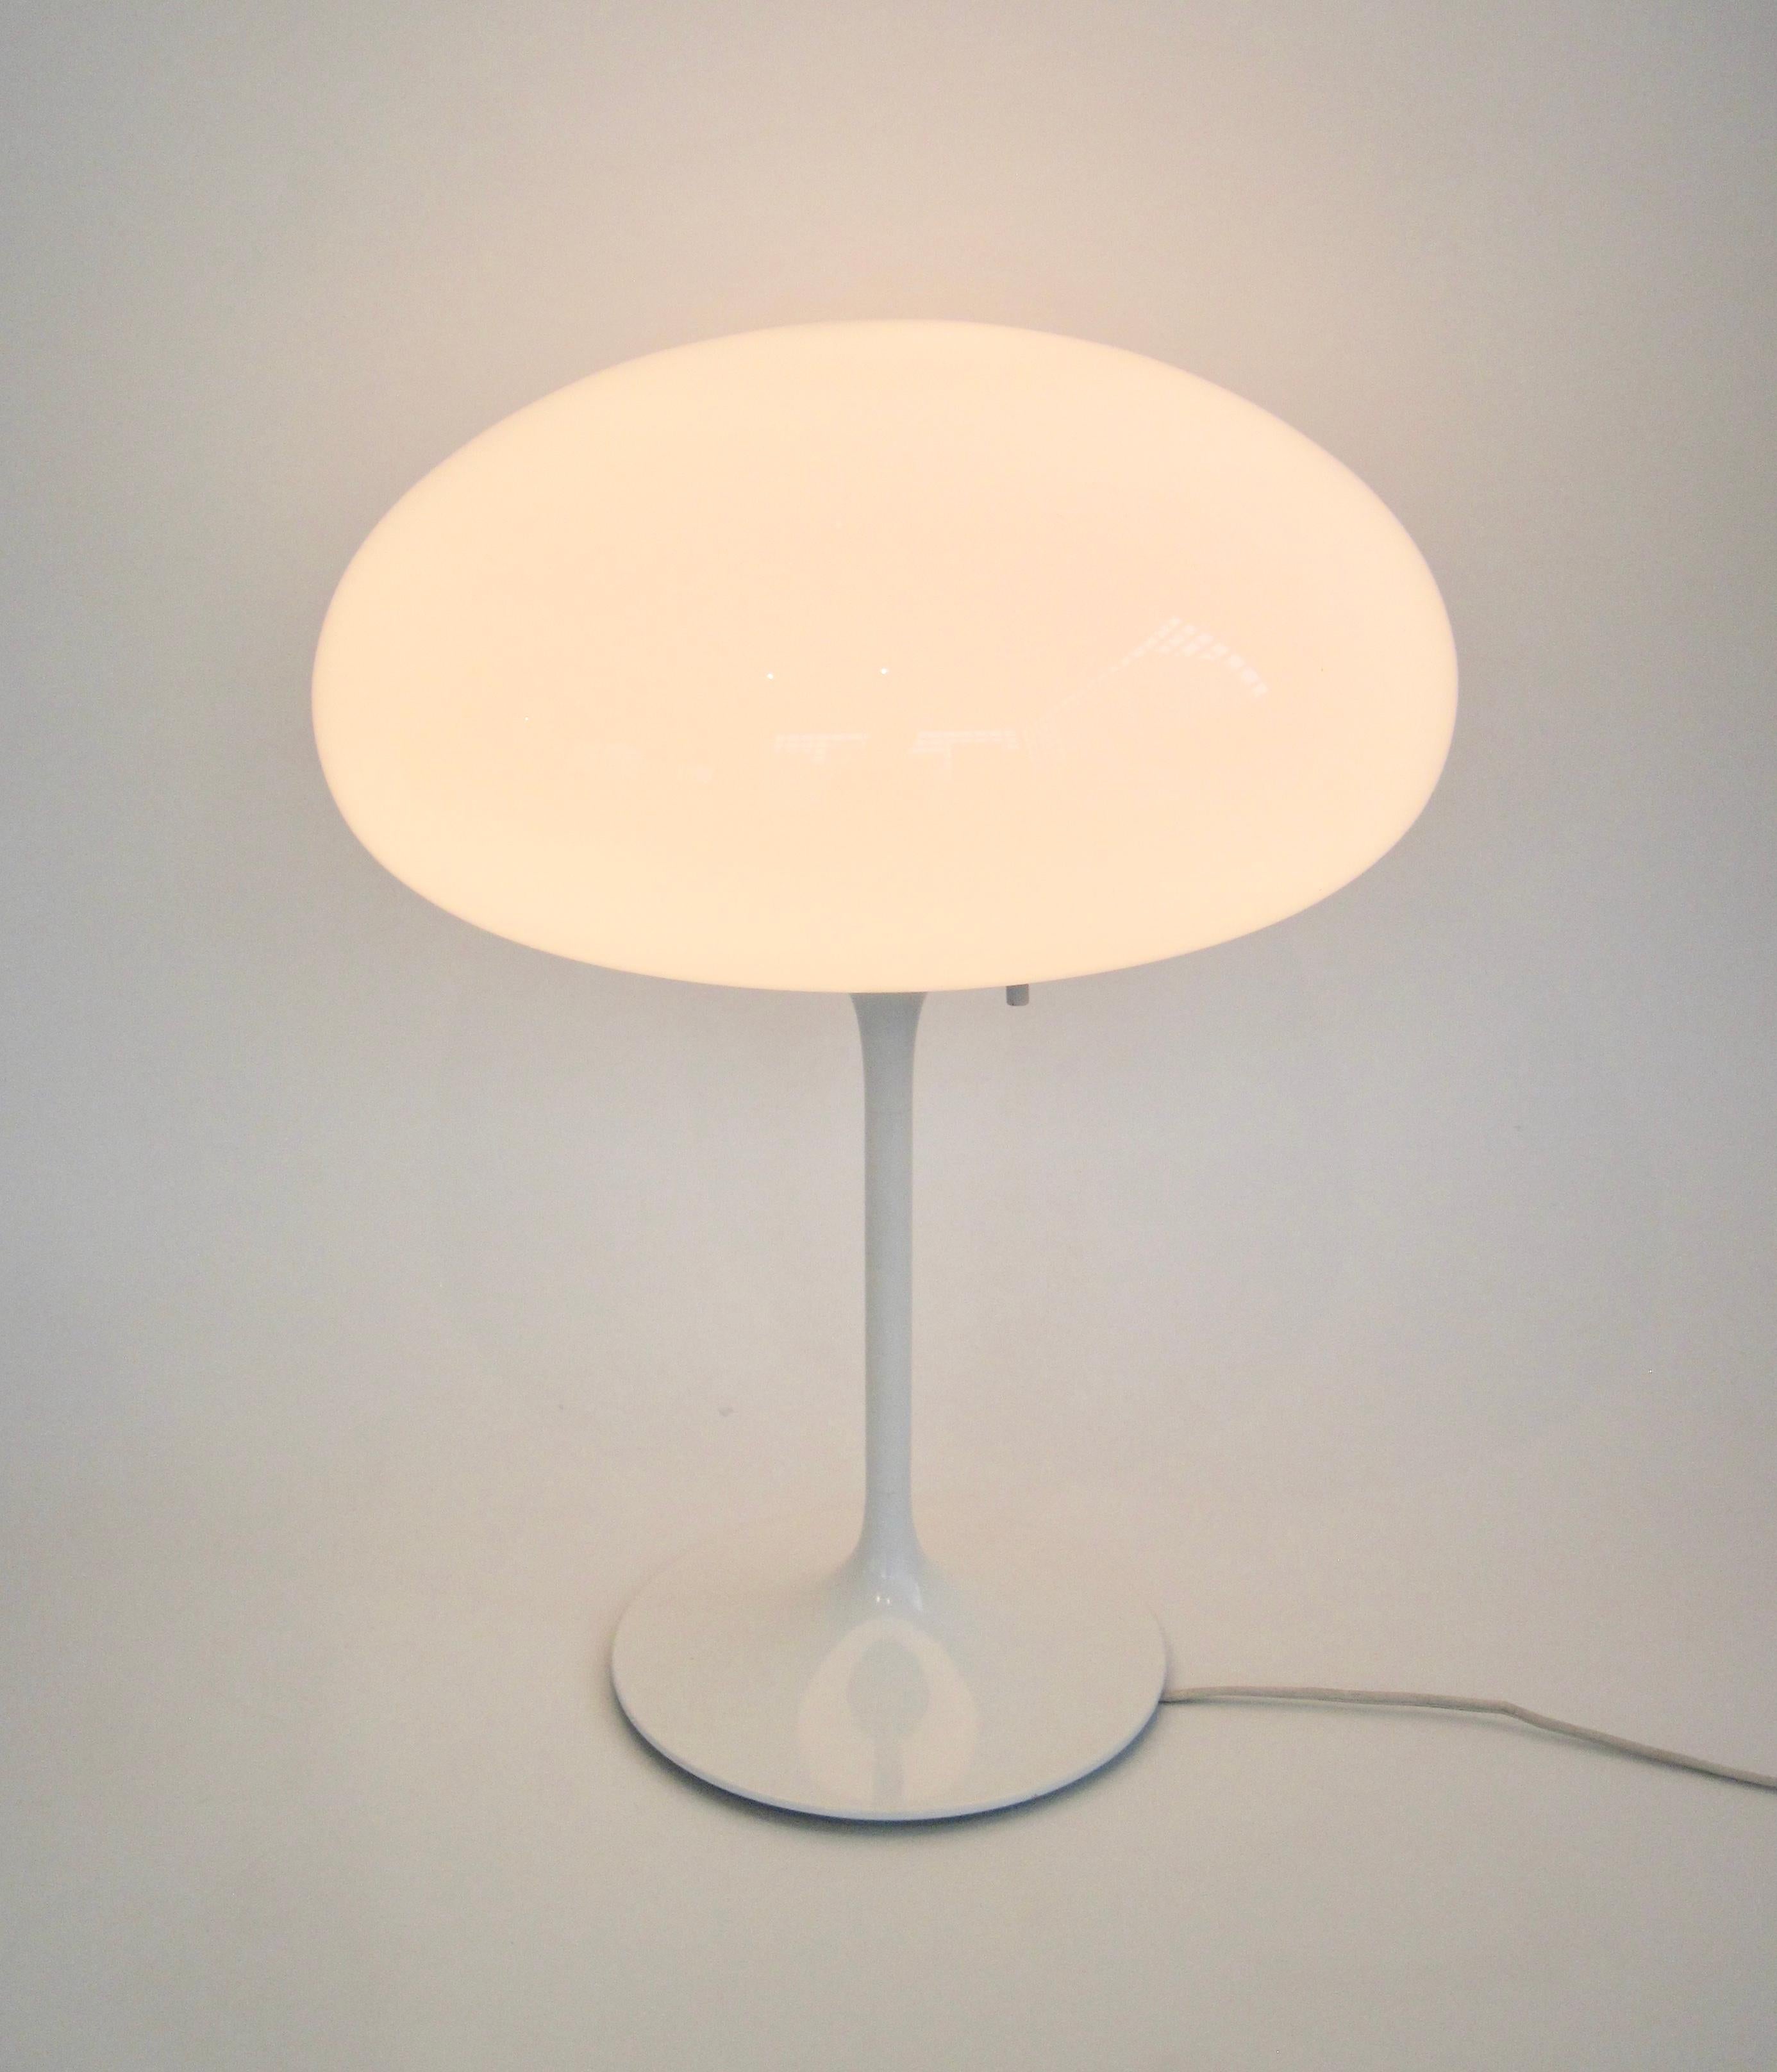 Zwei Lampen verfügbar. Stemlite-Tischleuchte mit Pilzkopf, entworfen von Bill Curry für Design Line, weiß emailliert, mit diskretem, vertikalem Schalter und dreifachem Sockel. Eine mundgeblasene Glaskugel sitzt auf dem Sockel und vervollständigt das